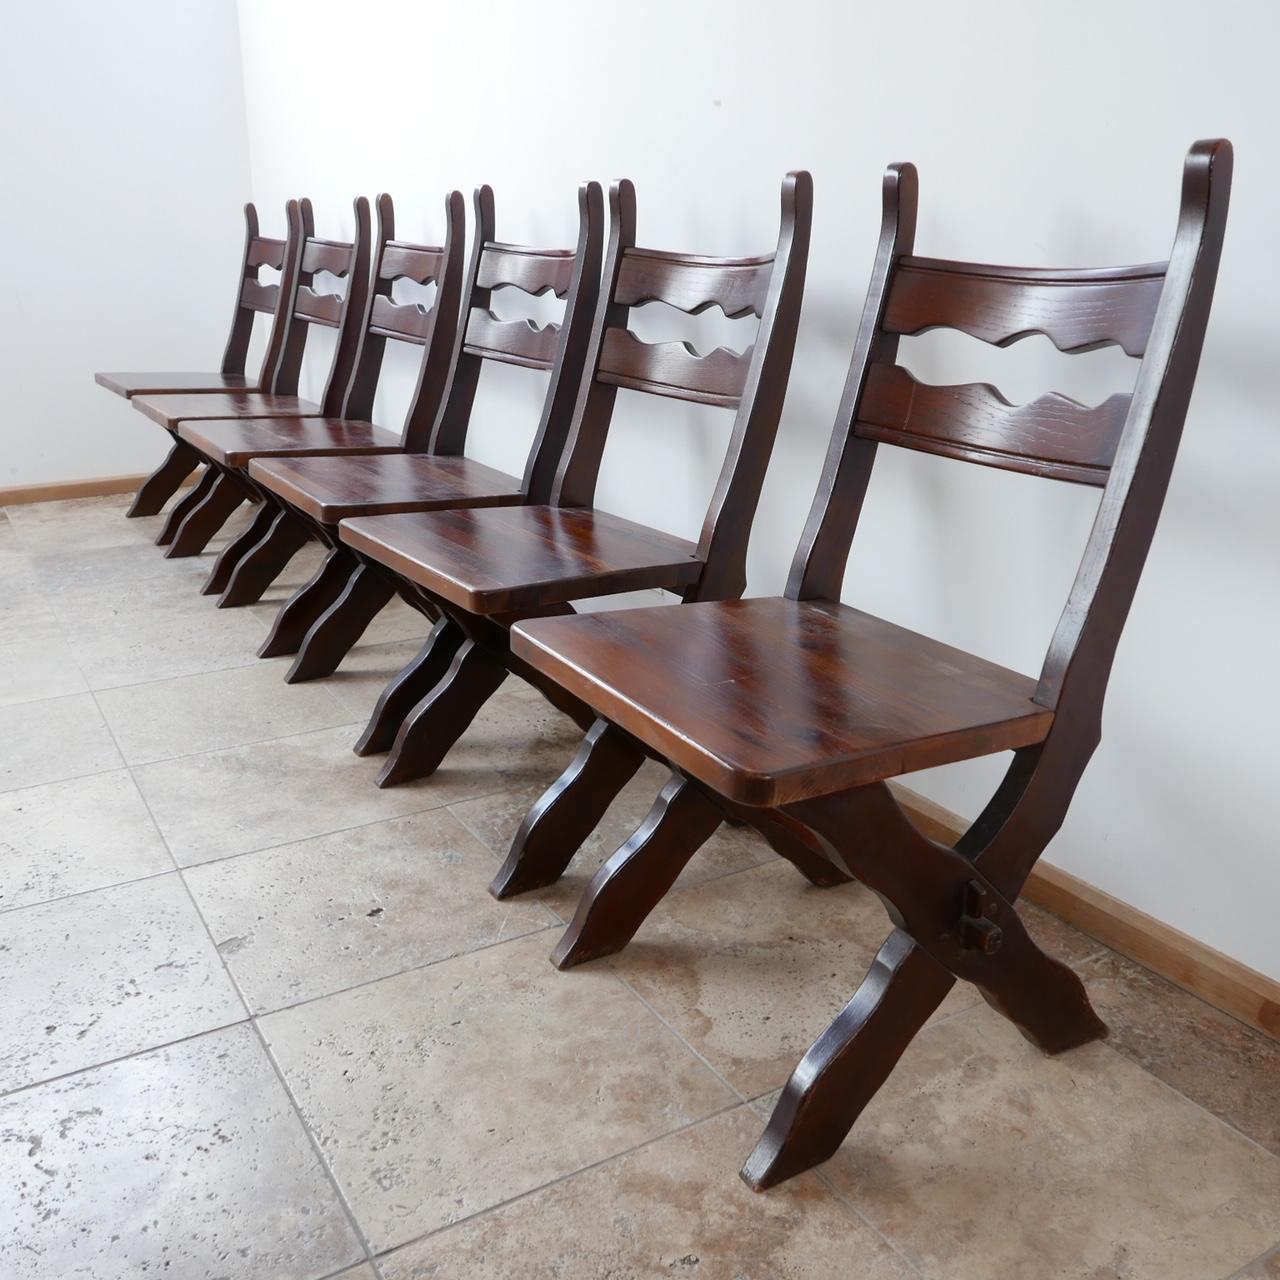 Un ensemble de six chaises de salle à manger. 

Belgique, c1980s. 

Bois teinté. 

De bonnes lignes fortes. 

Bon état général, quelques coups et éraflures correspondant à l'âge. 

Dimensions : 48 L x 53 P x 44 hauteur d'assise x 94